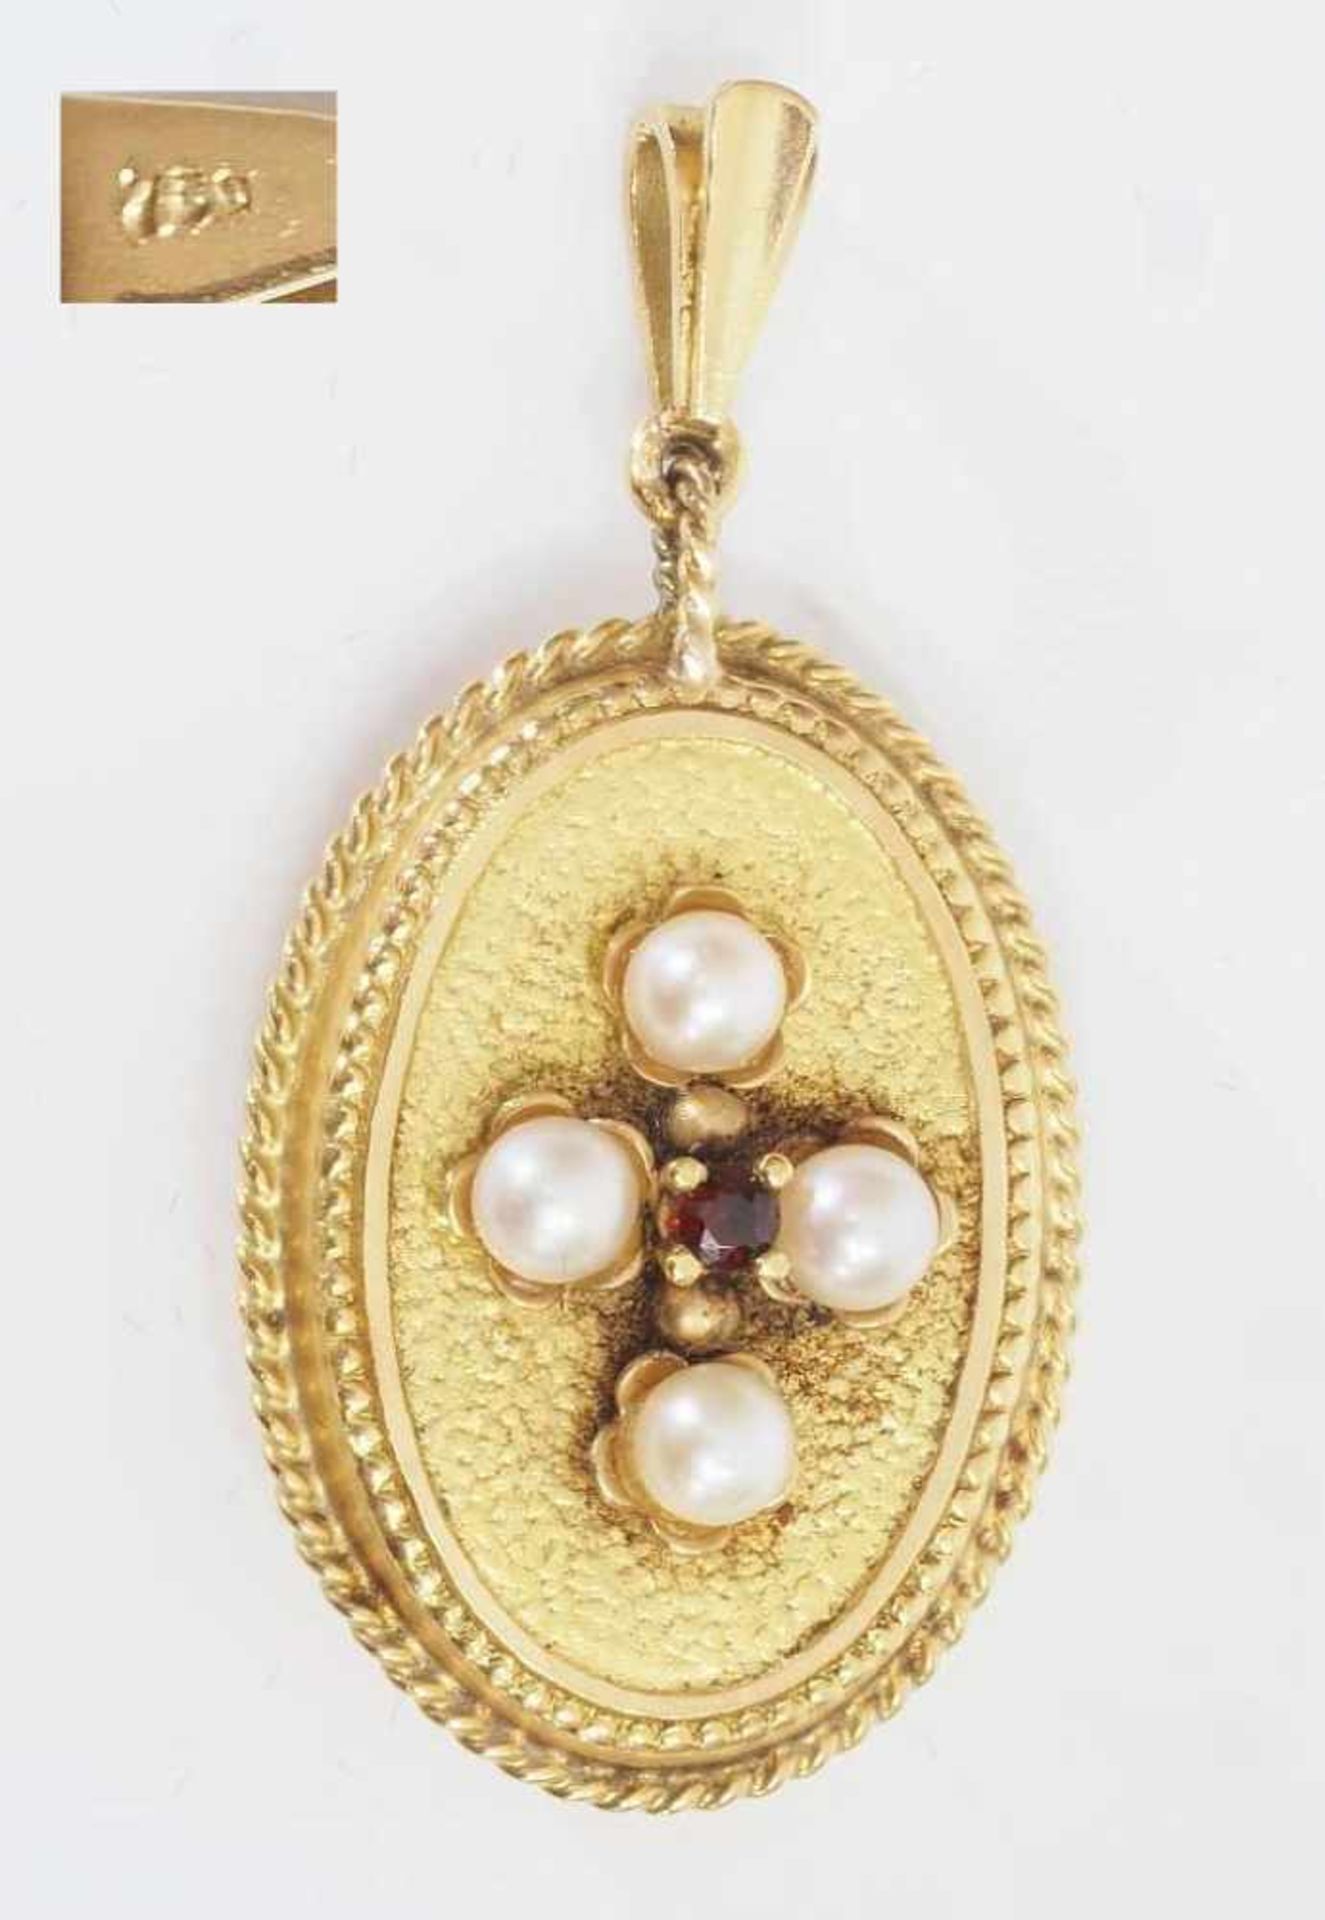 Medaillon mit Perlen und Granat. Medaillon mit Perlen und Granat. 750er Gelbgold. Ovale Form, zum